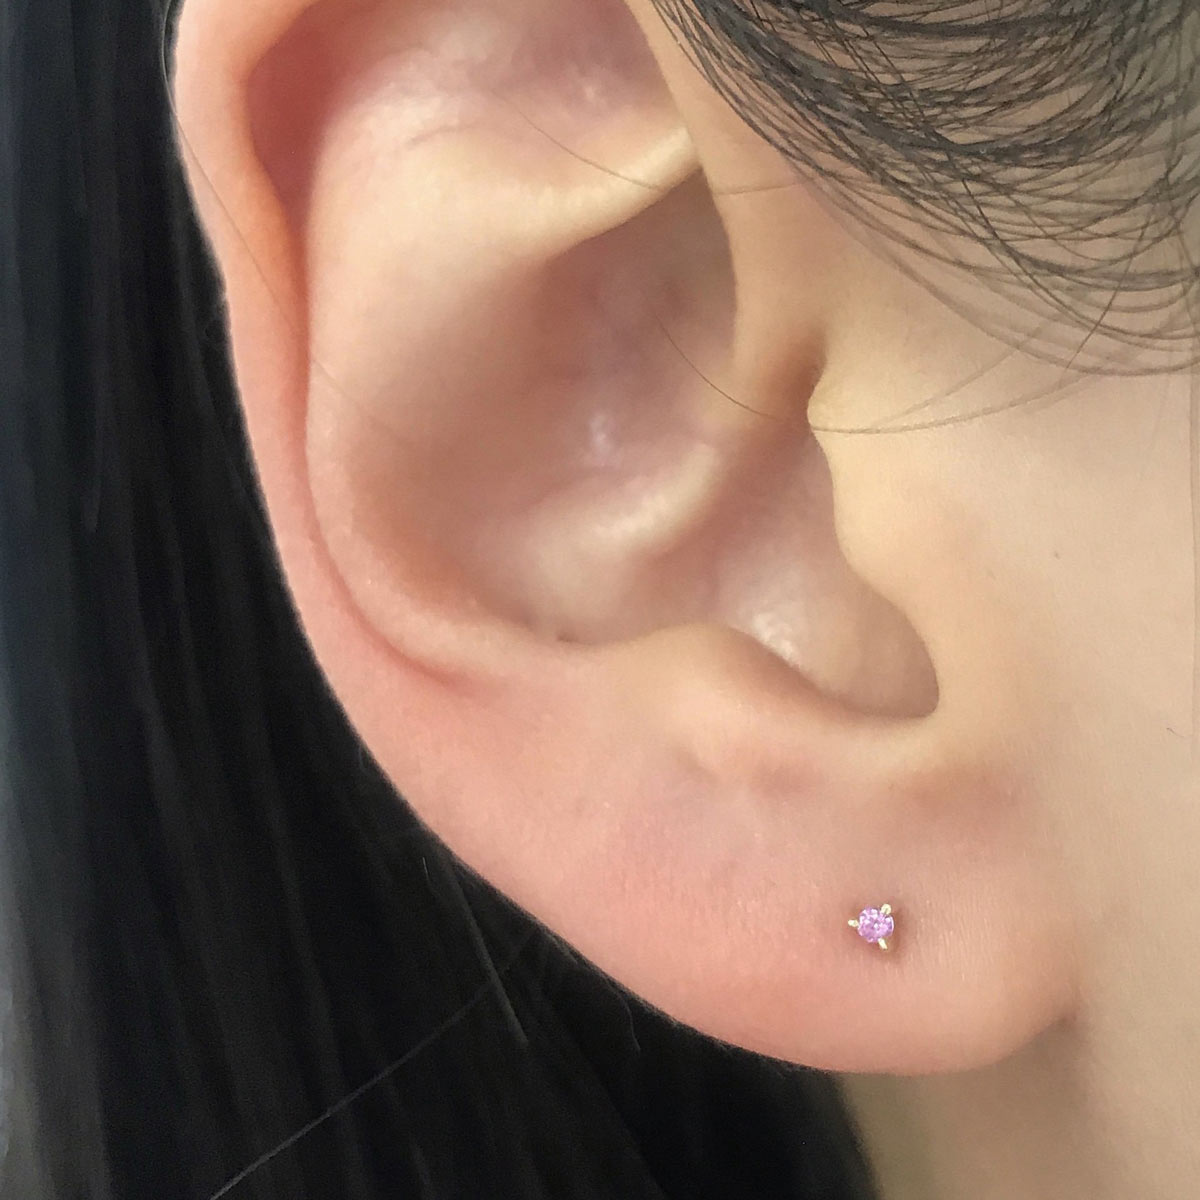 1.5 mm Pink Sapphire Dot Stud Earrings